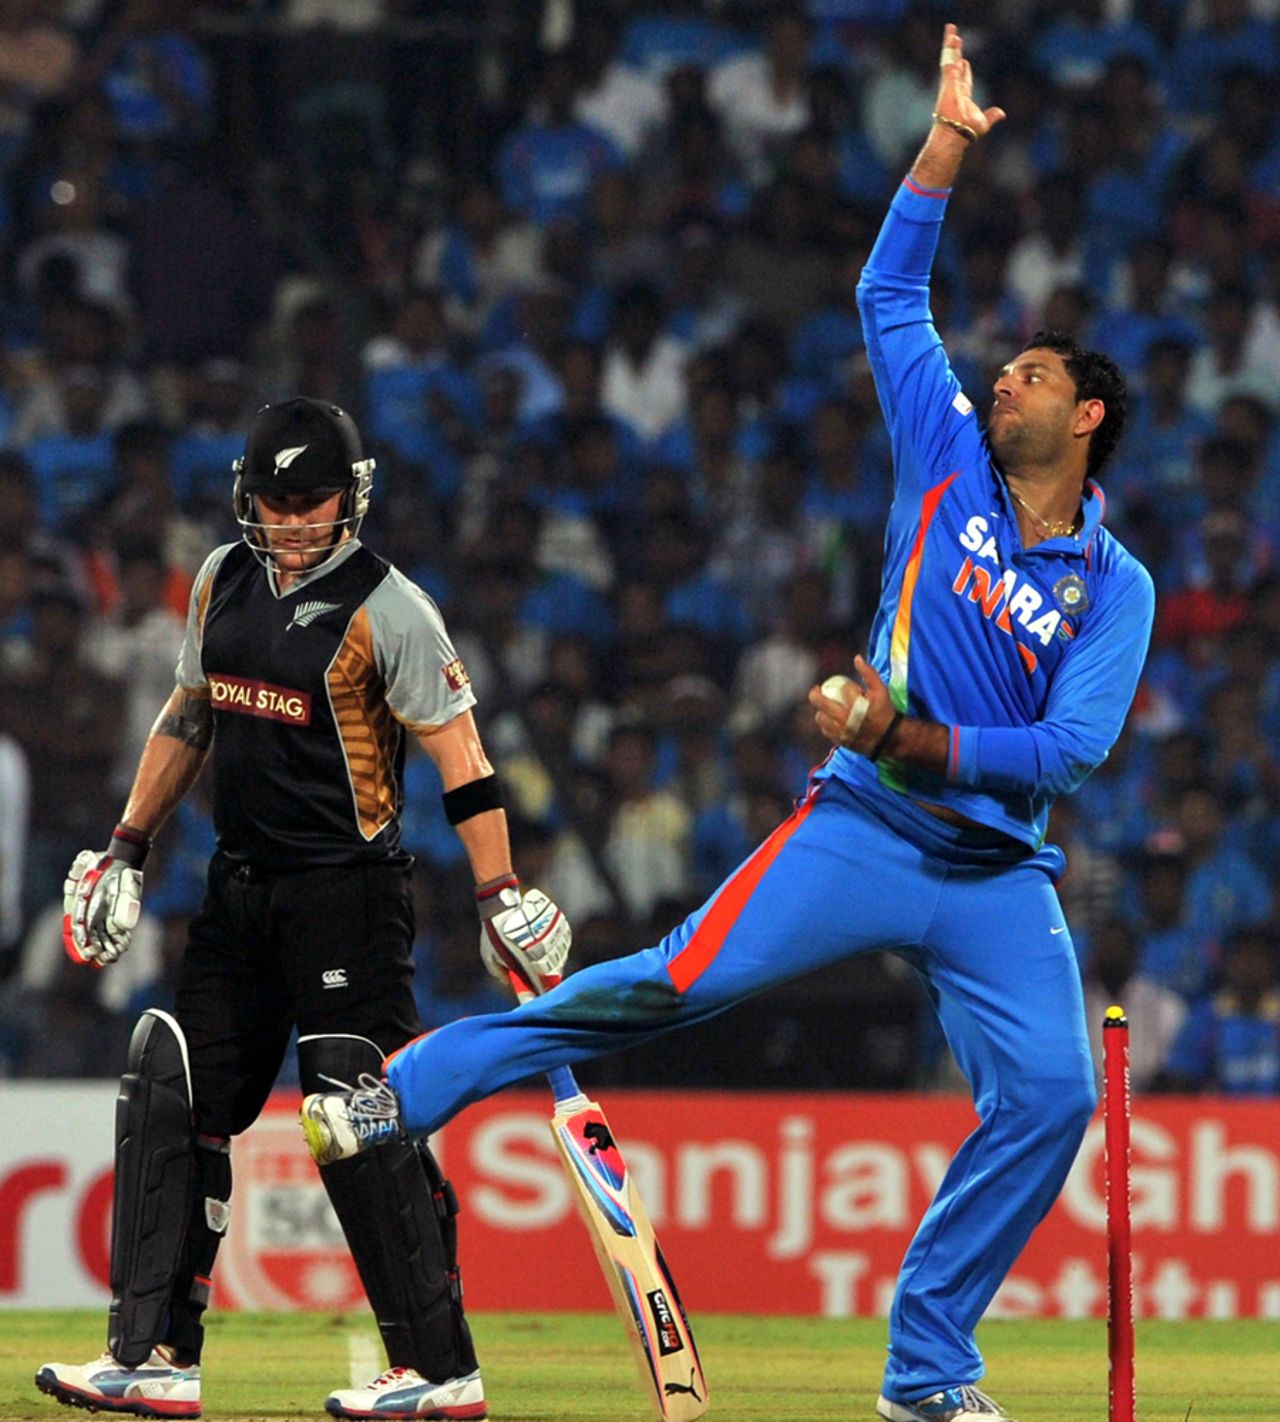 Yuvraj Singh bowls, India v New Zealand, 2nd T20I, Chennai, September 11, 2012